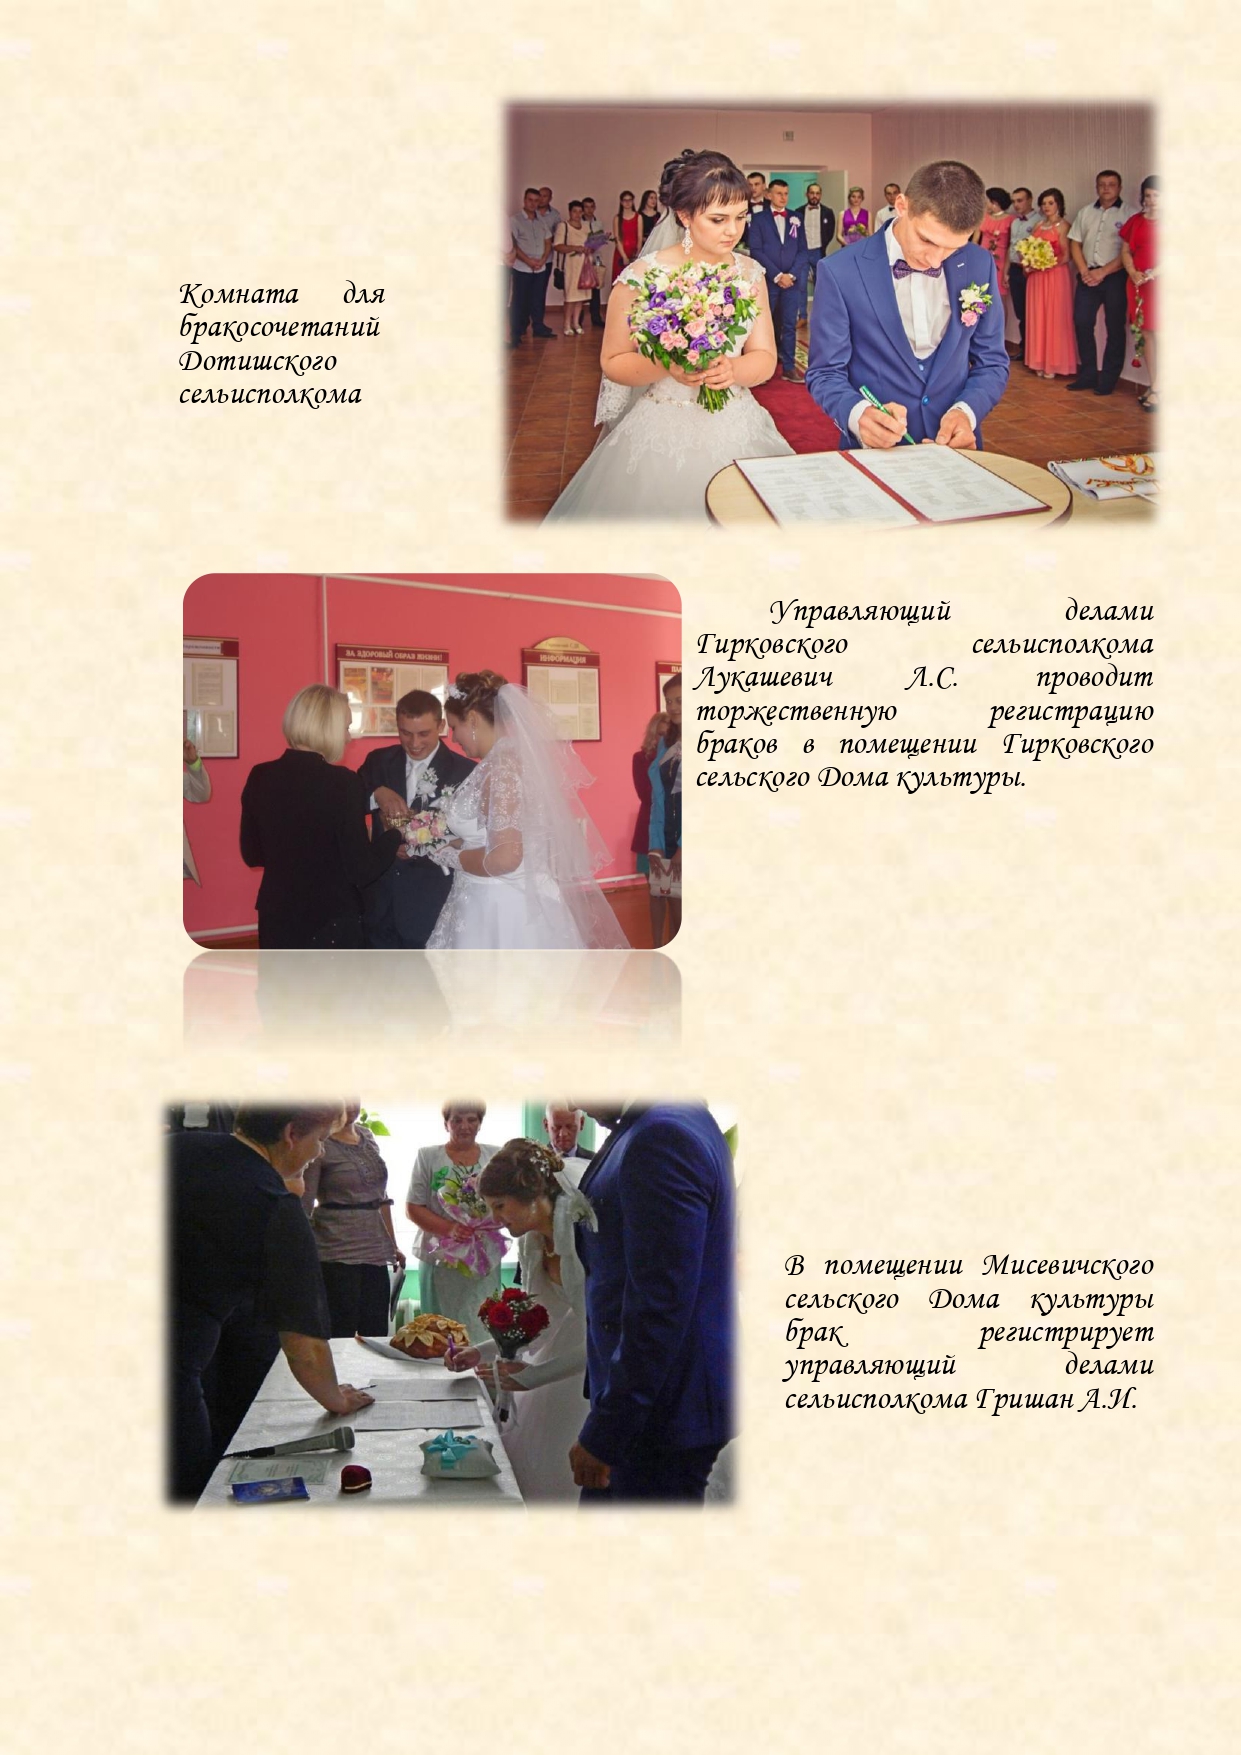 История органов загса Вороновского района с изменениями (1)_page-0023.jpg